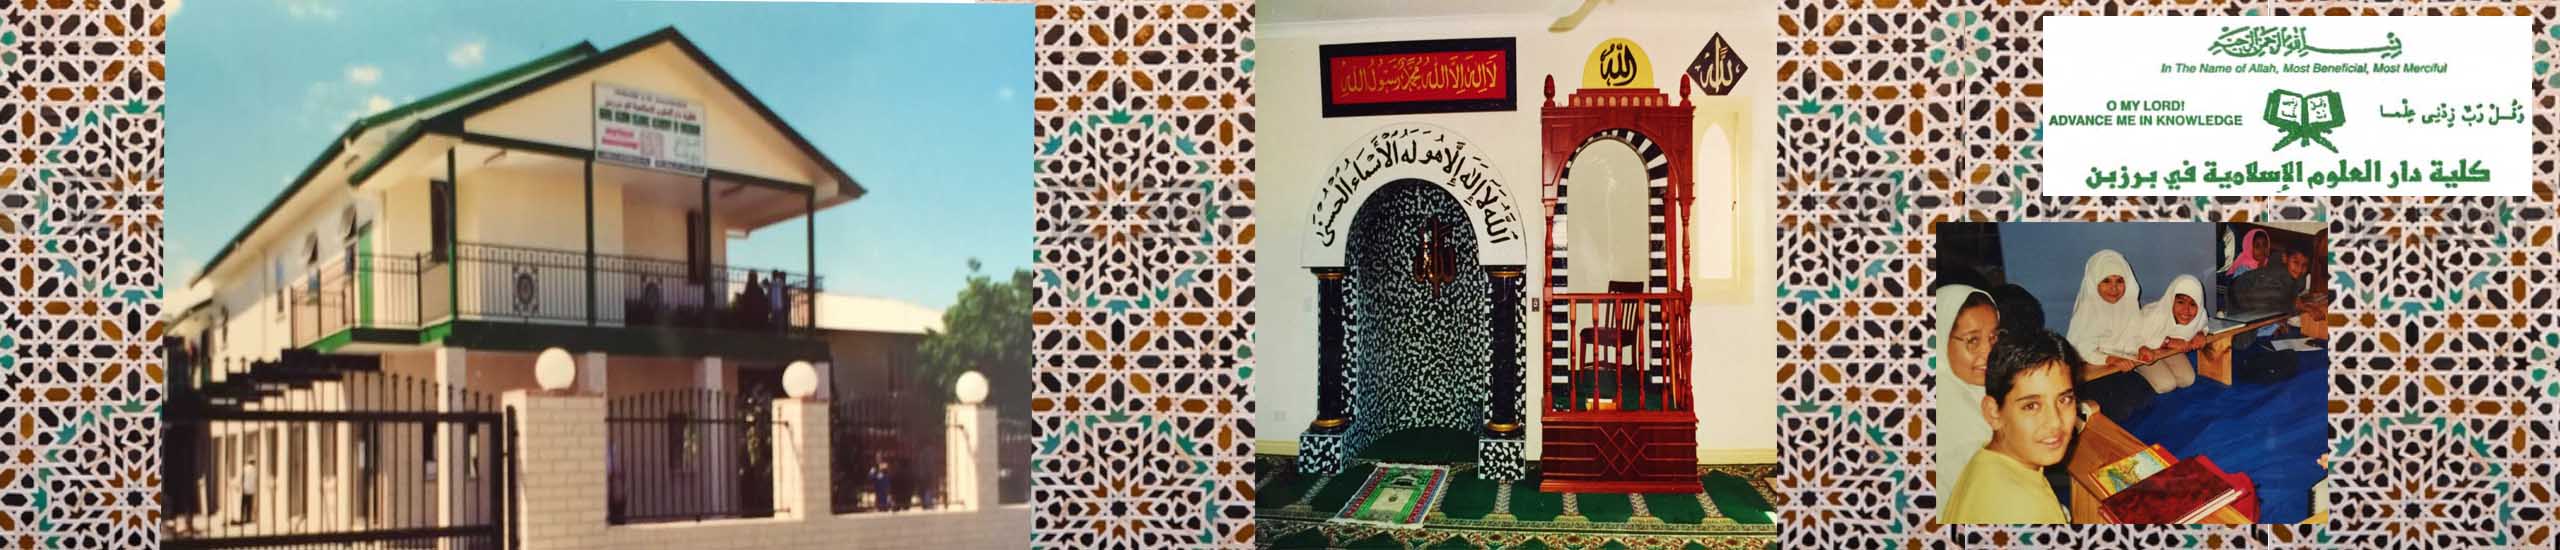 Darul Uloom Islamic Academy of Brisbane